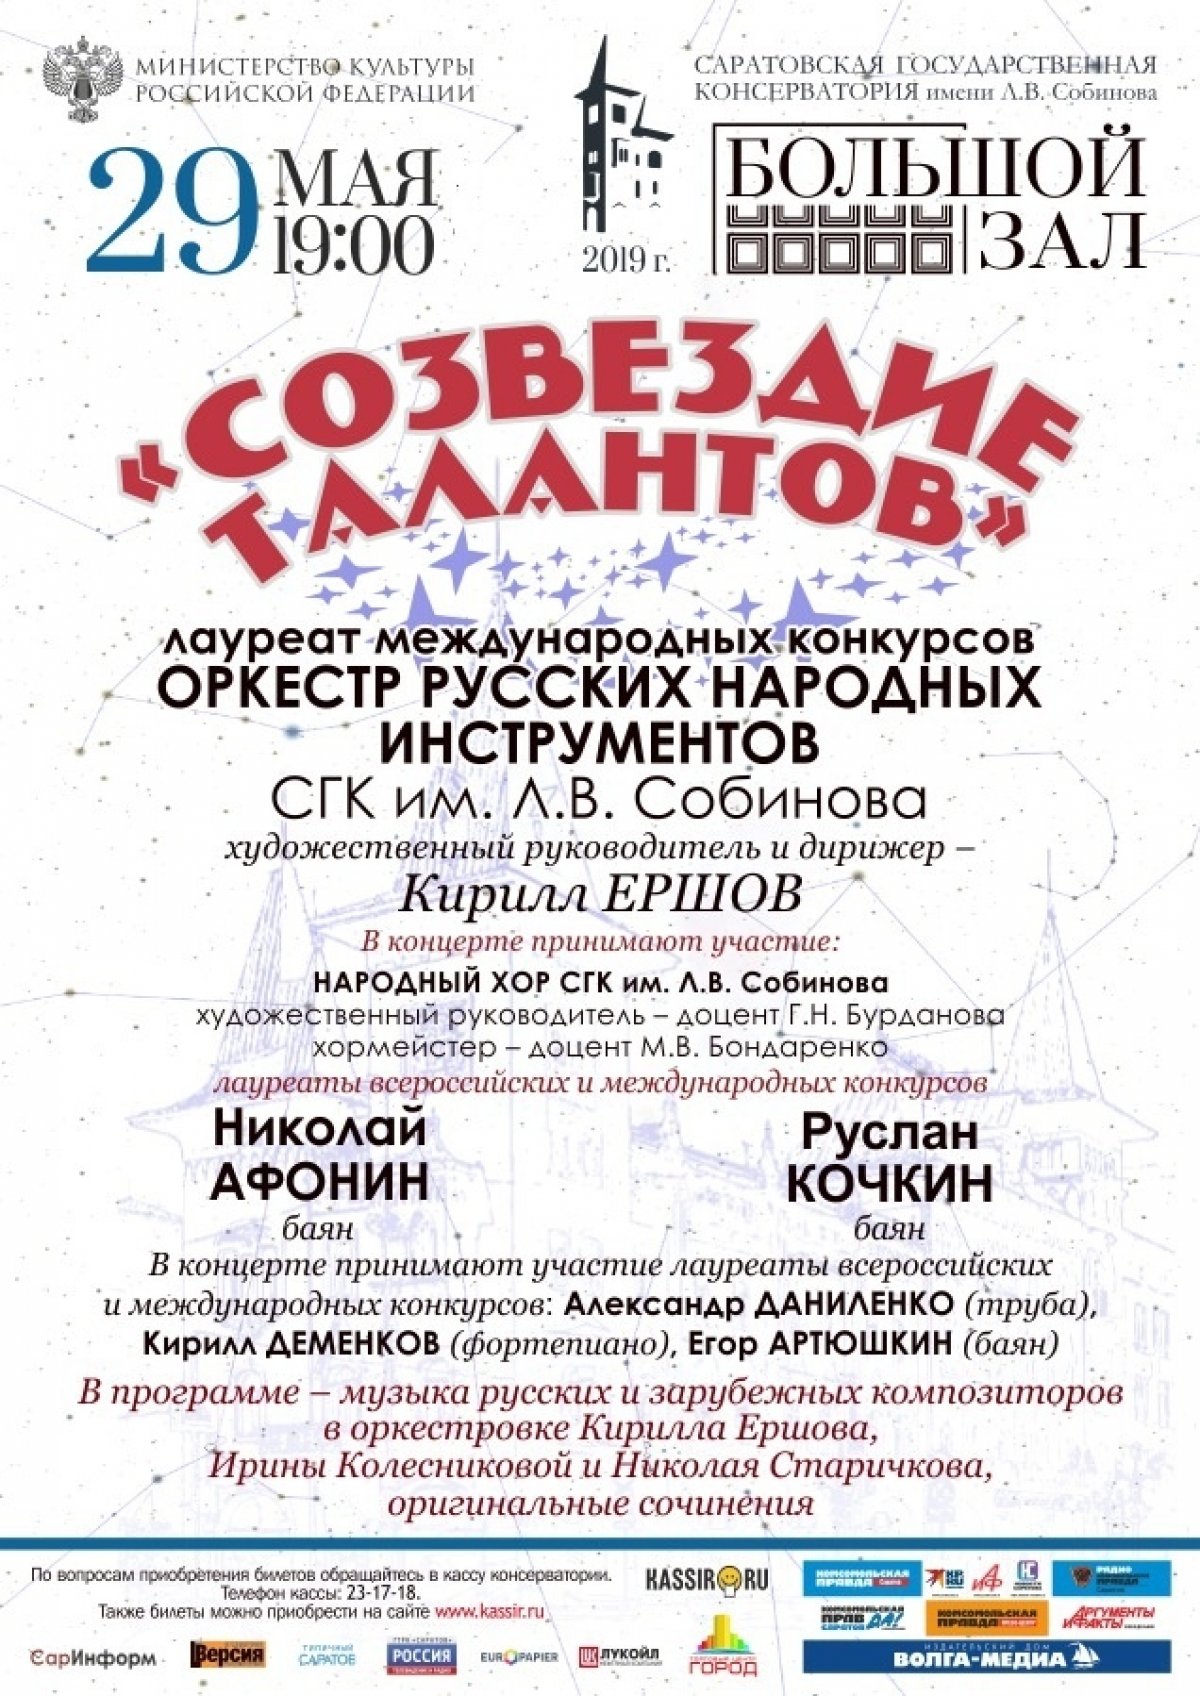 29 мая (завтра) в Большом зале Саратовской консерватории состоится концерт народного оркестра под управлением доцента Кирилла Ершова.